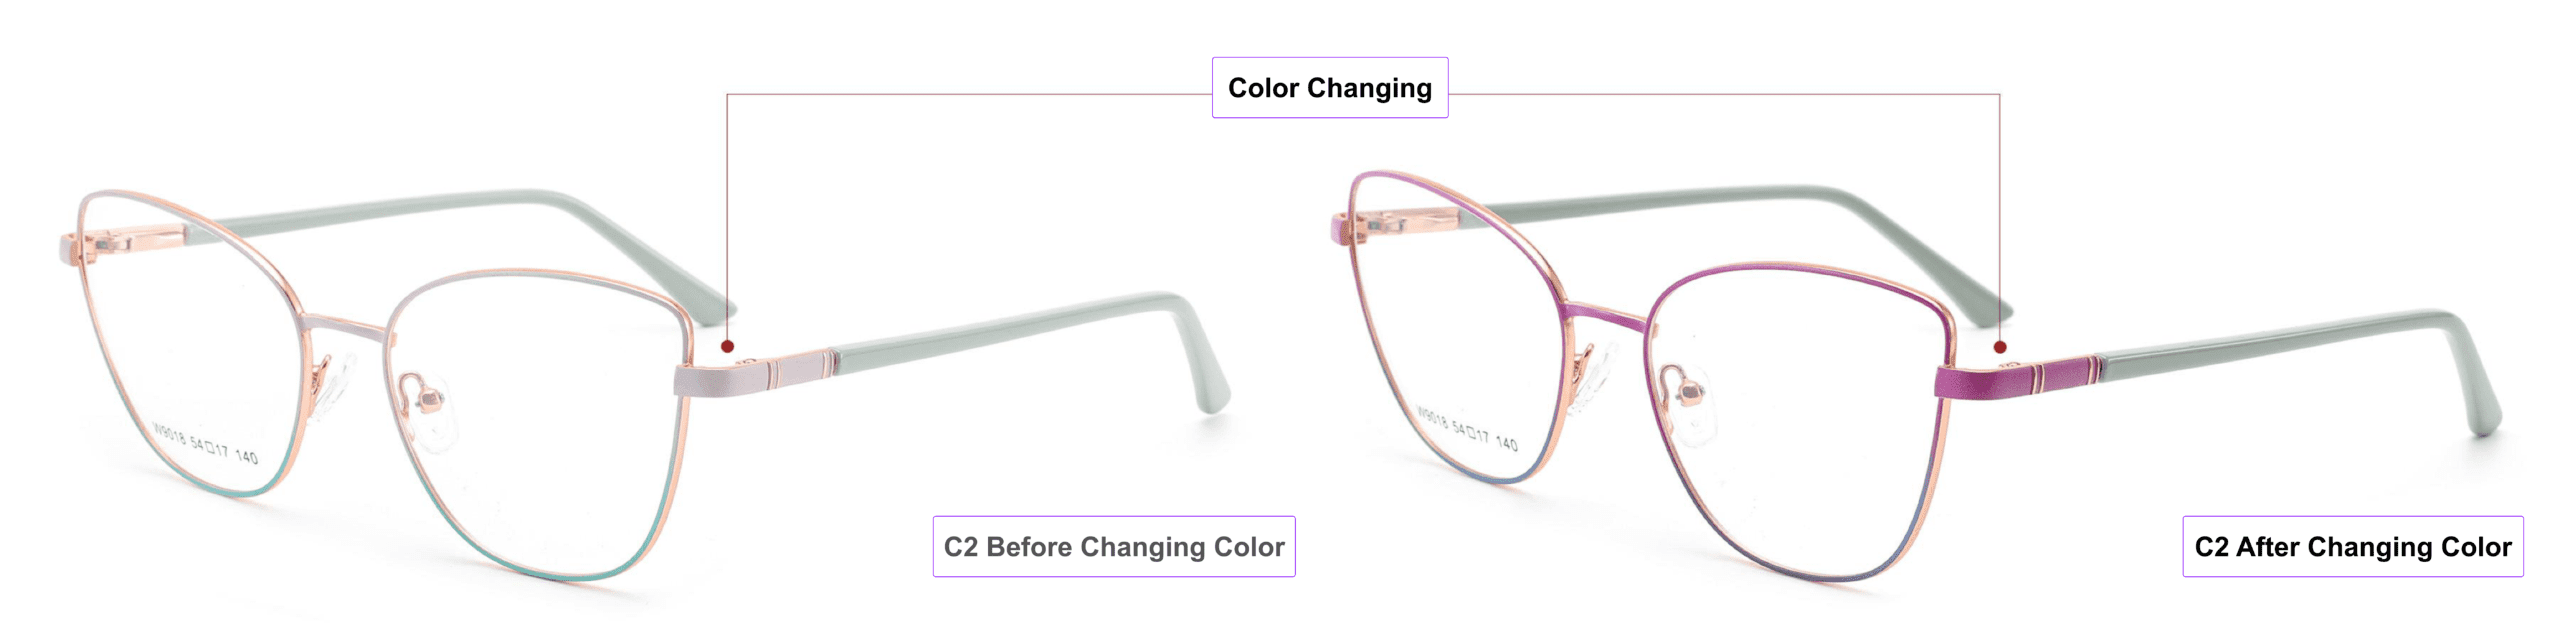 Color Changing, Cat Eye, Eyeglass Frames, mist blue, lavender, rose pink, China glasses frames